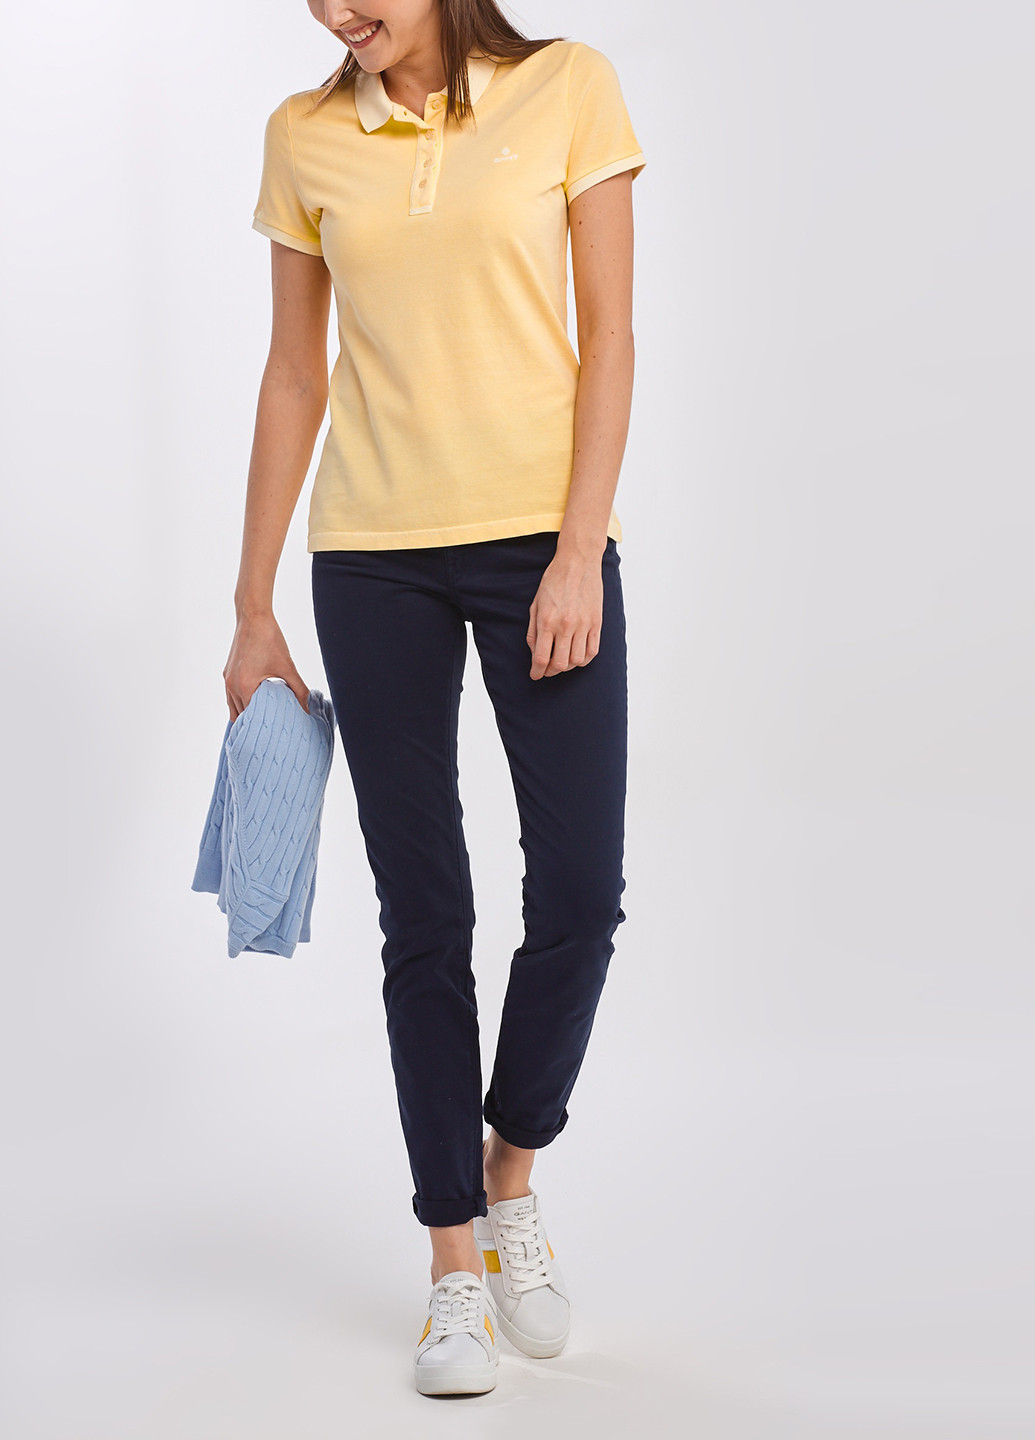 Светло-желтая женская футболка-поло Gant однотонная